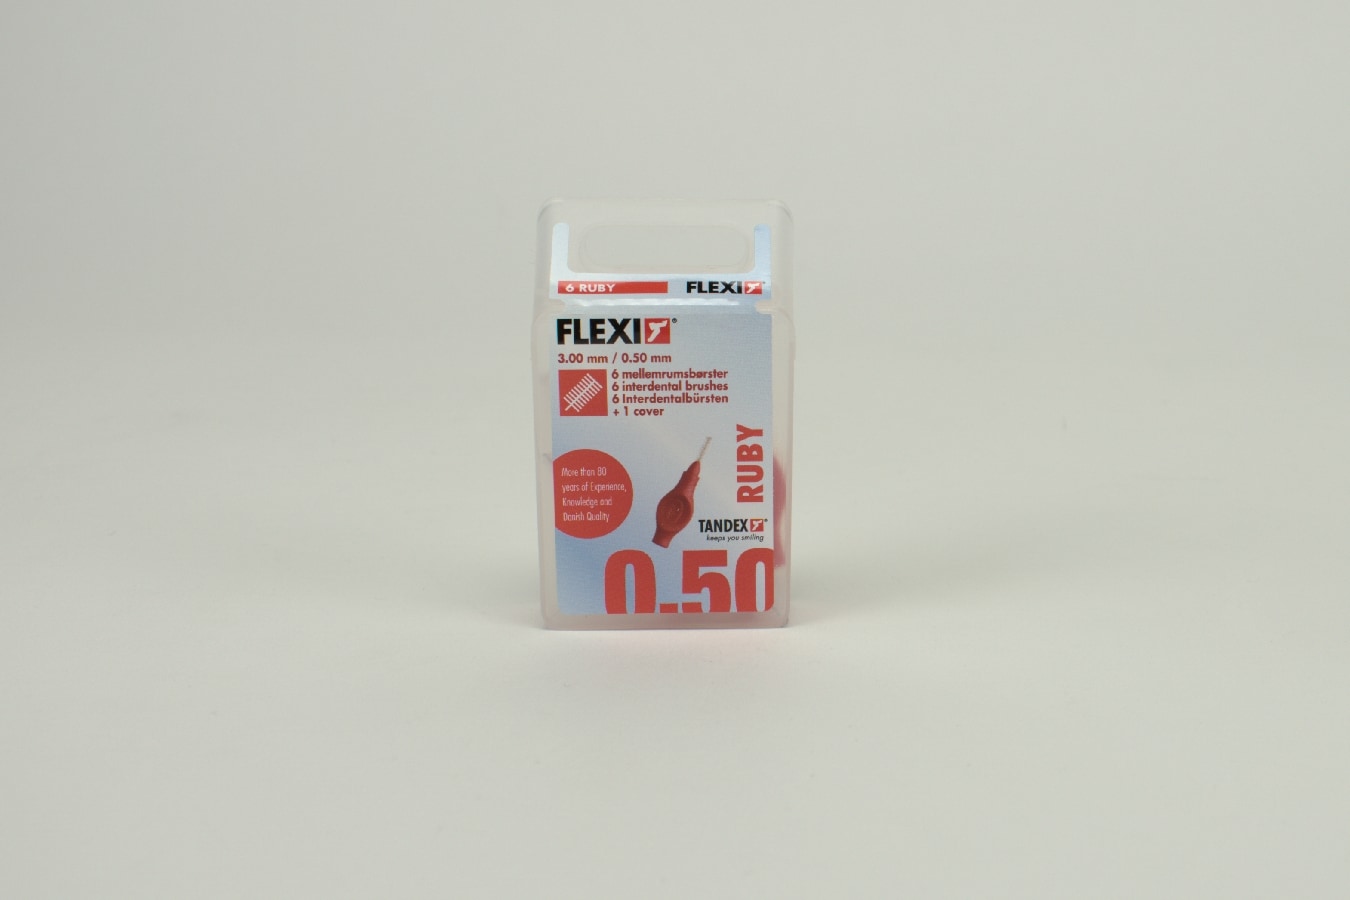 Mellanrumsborste FLEXI röd 0,50mm 6st